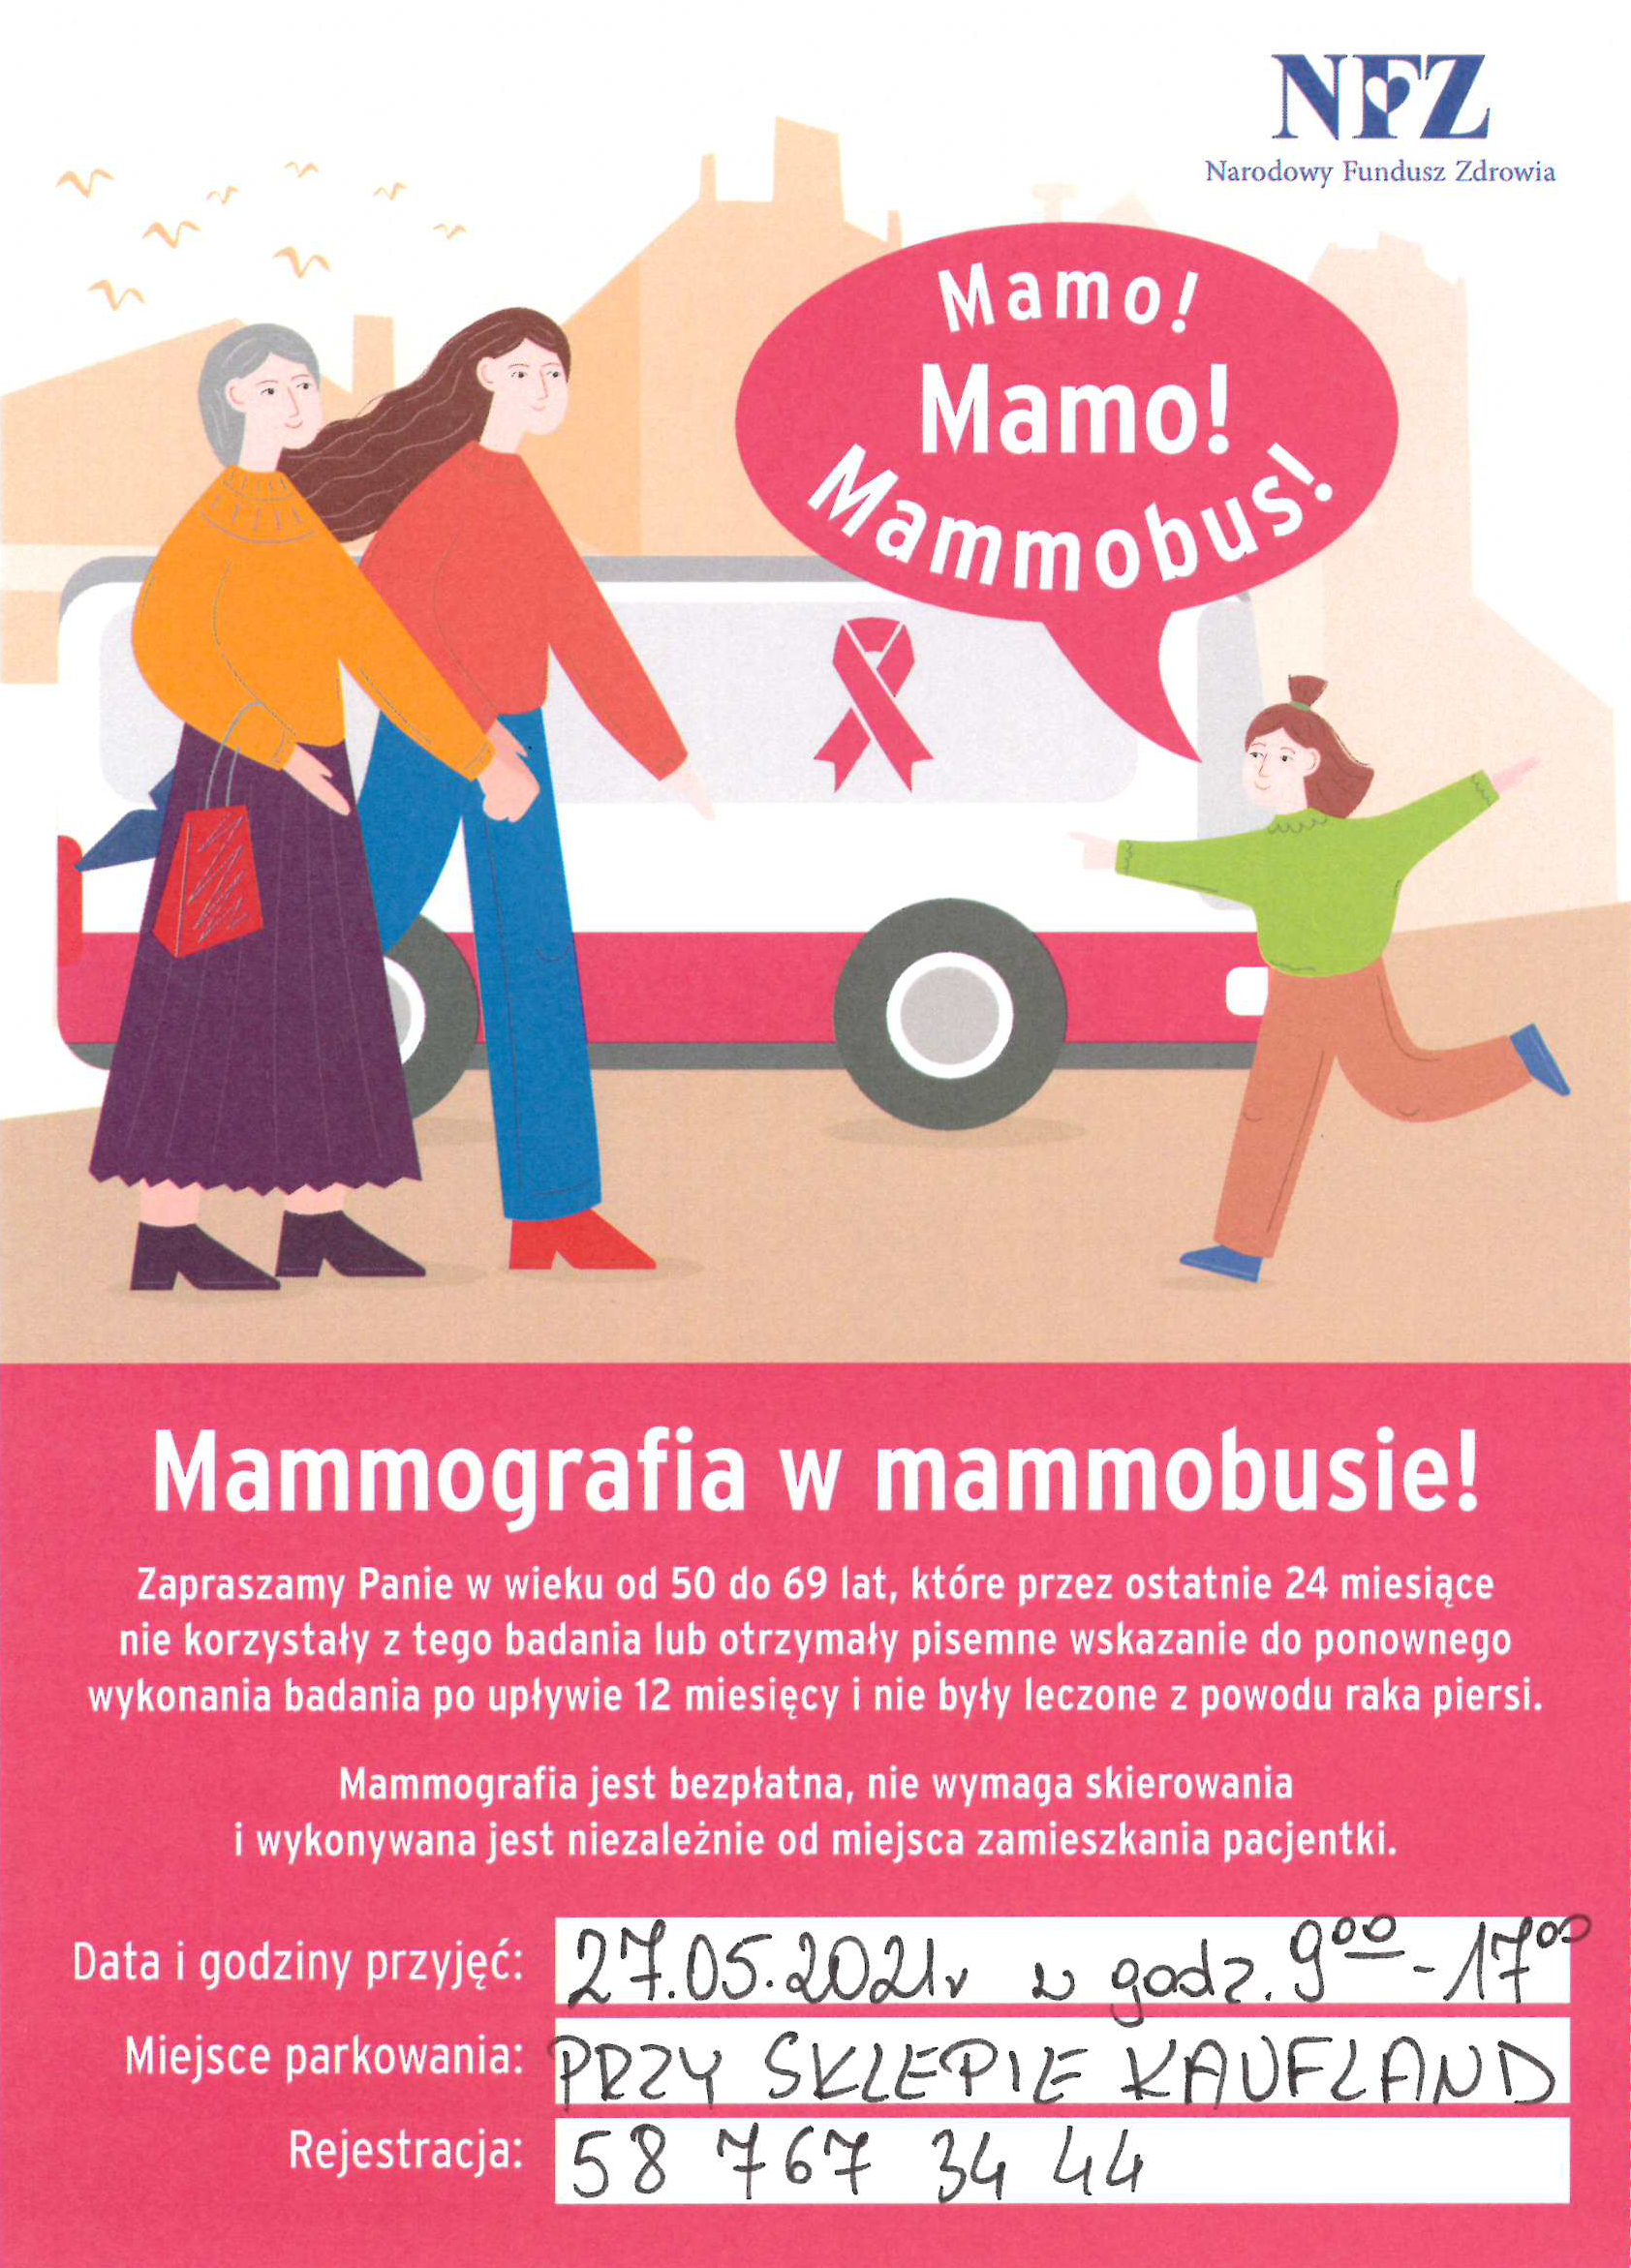 Bezpłatna mammografia w powiecie piskim 27 maja 2021